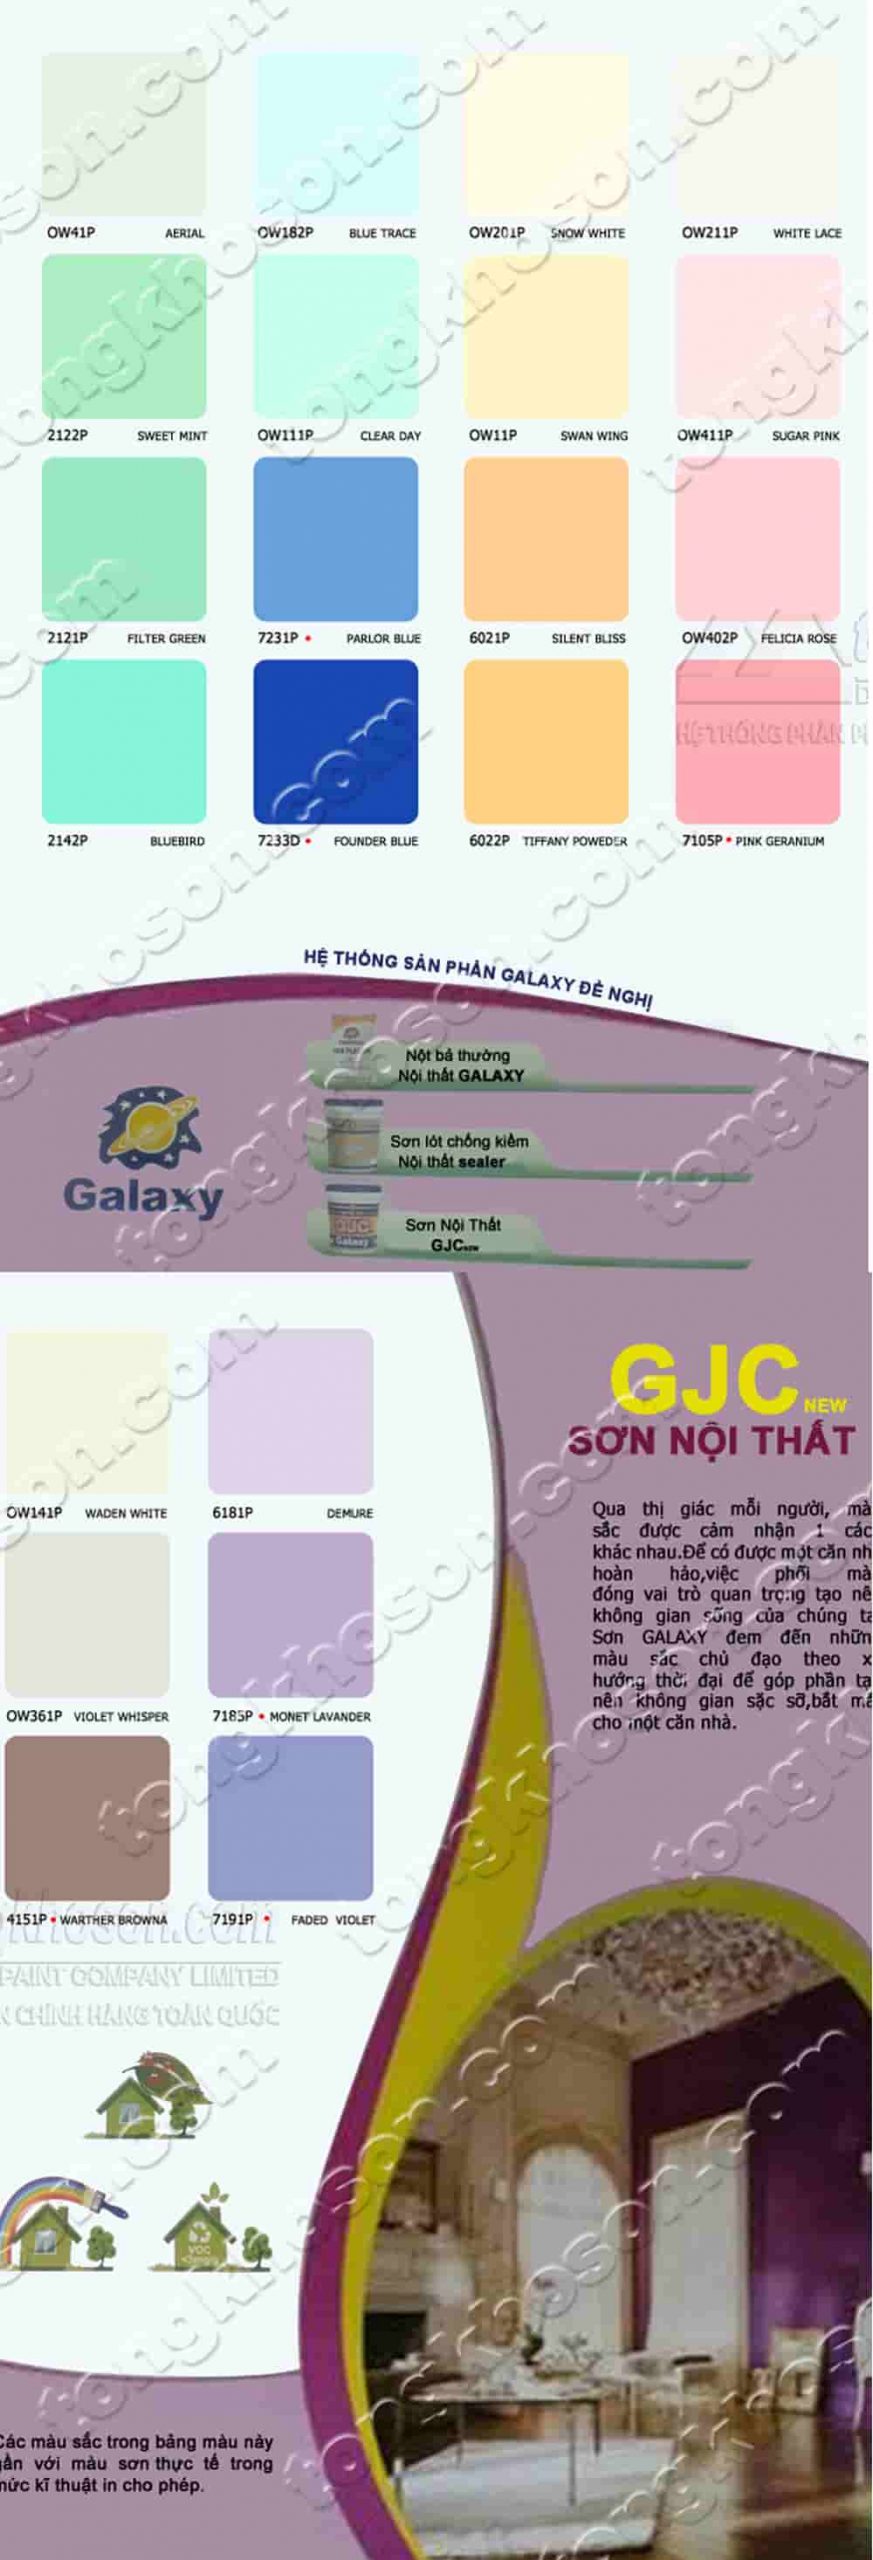 Bảng màu sơn Galaxy nội thất GJC kinh tế